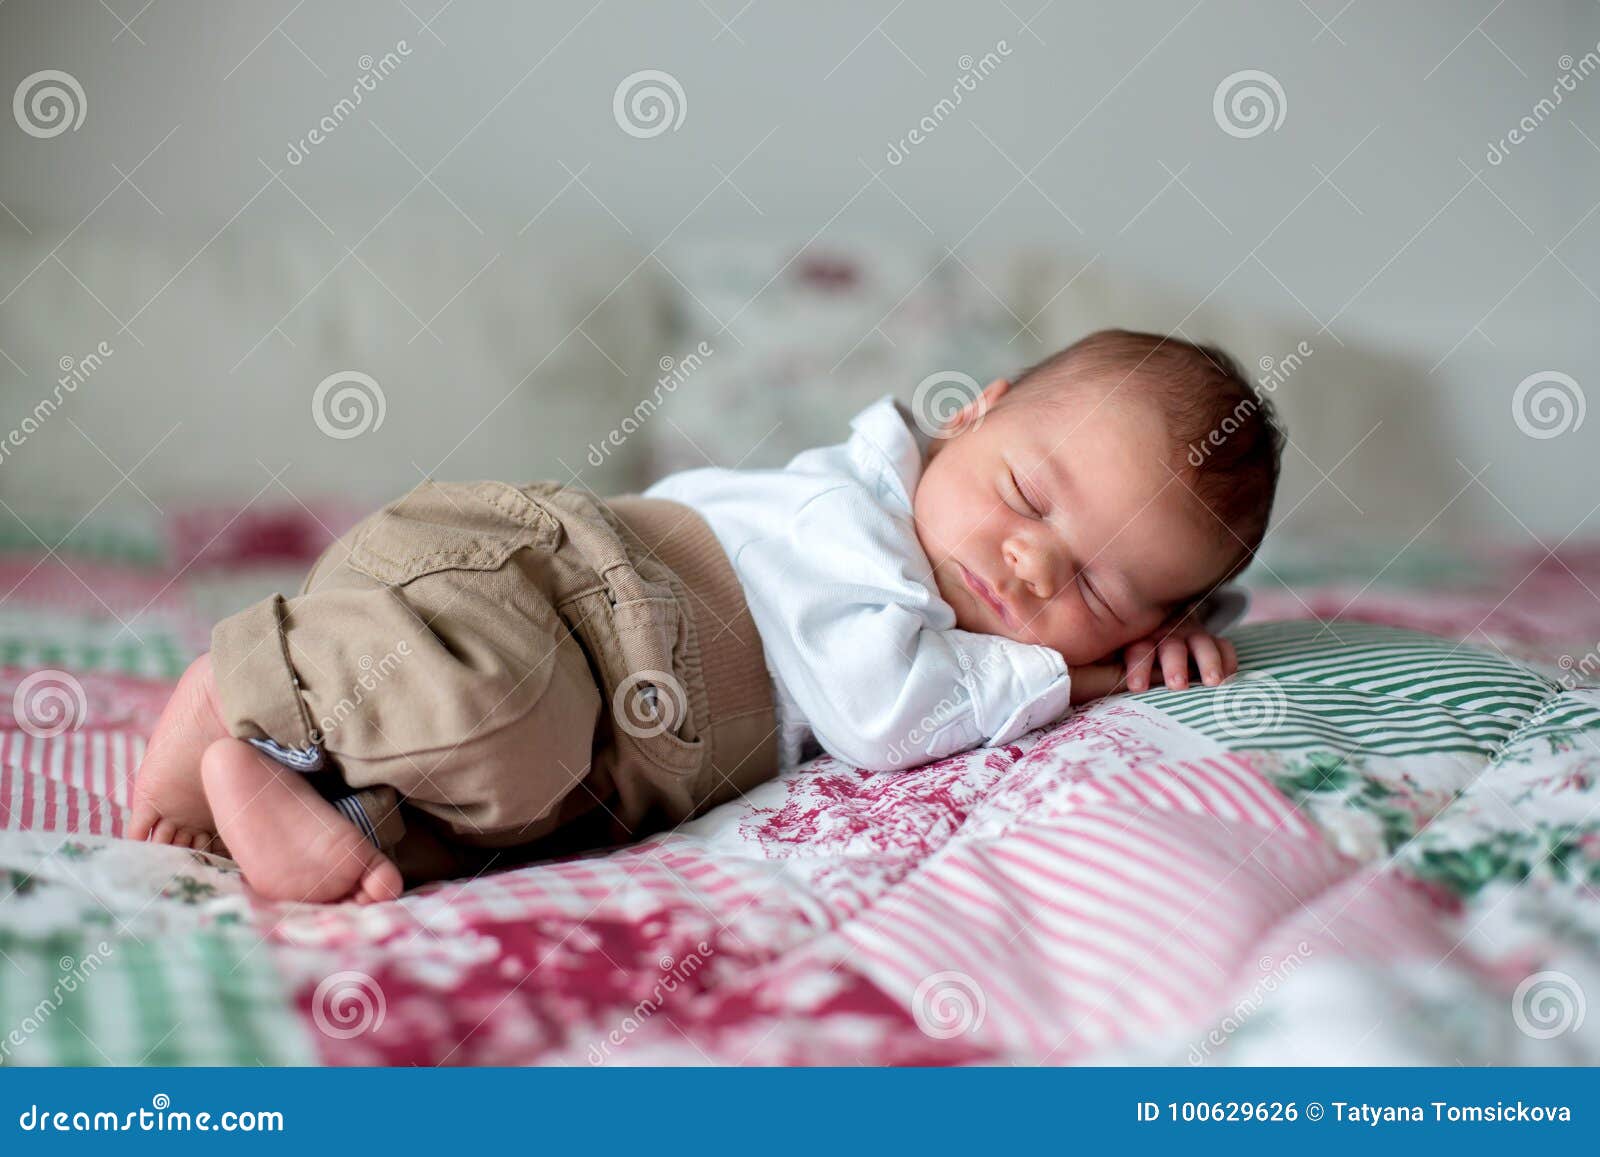 笑的婴儿素材-笑的婴儿图片-笑的婴儿素材图片下载-觅知网